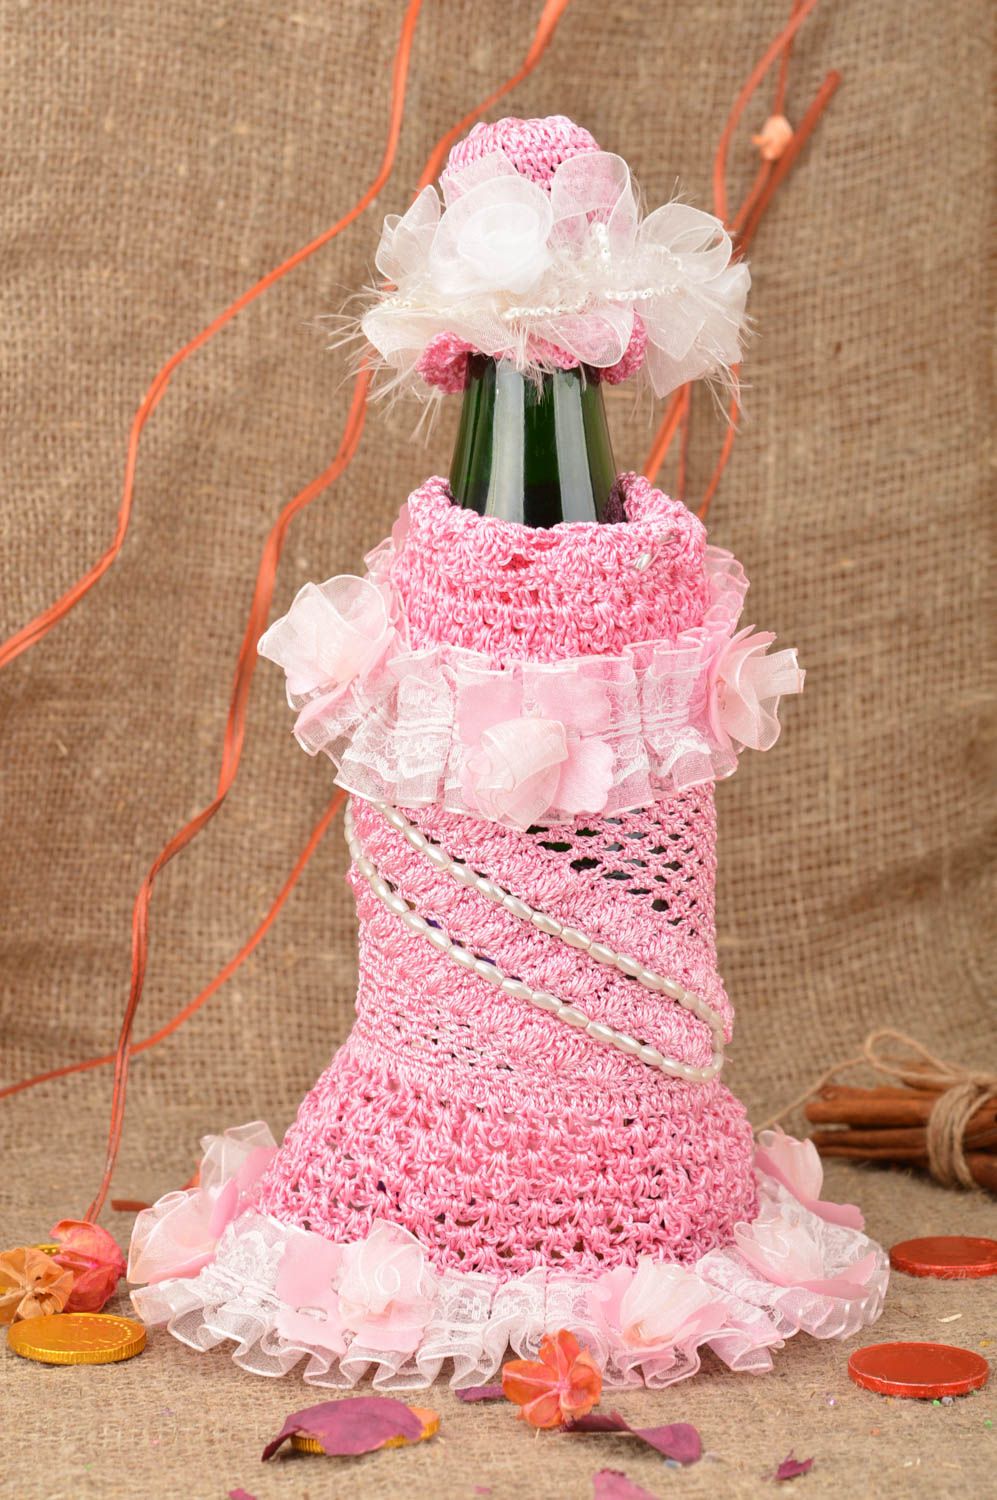 Платье на бутылку розовое вязаное ручной работы с шляпкой нарядное красивое фото 1